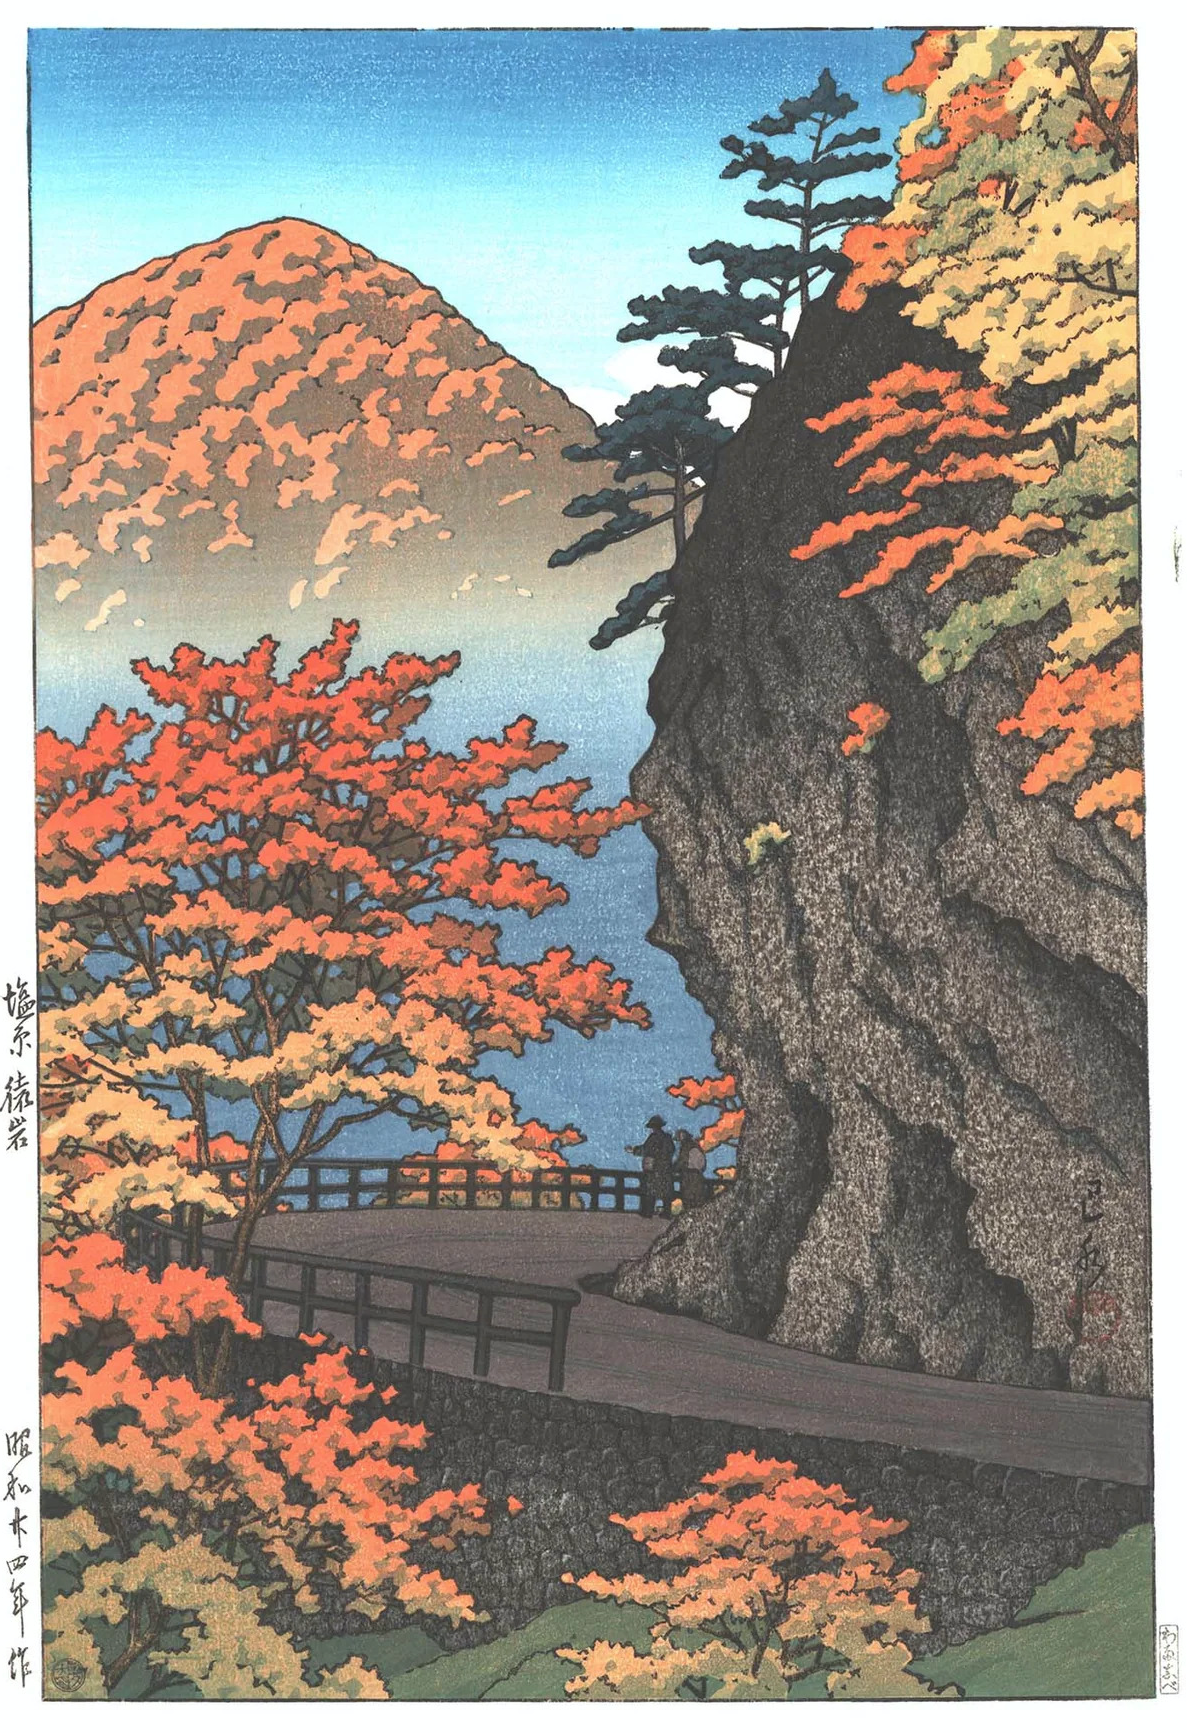 Autunno a Saruiwa, Shiobara by Hasui Kawase - 1949 - 38 x 24,4 cm collezione privata